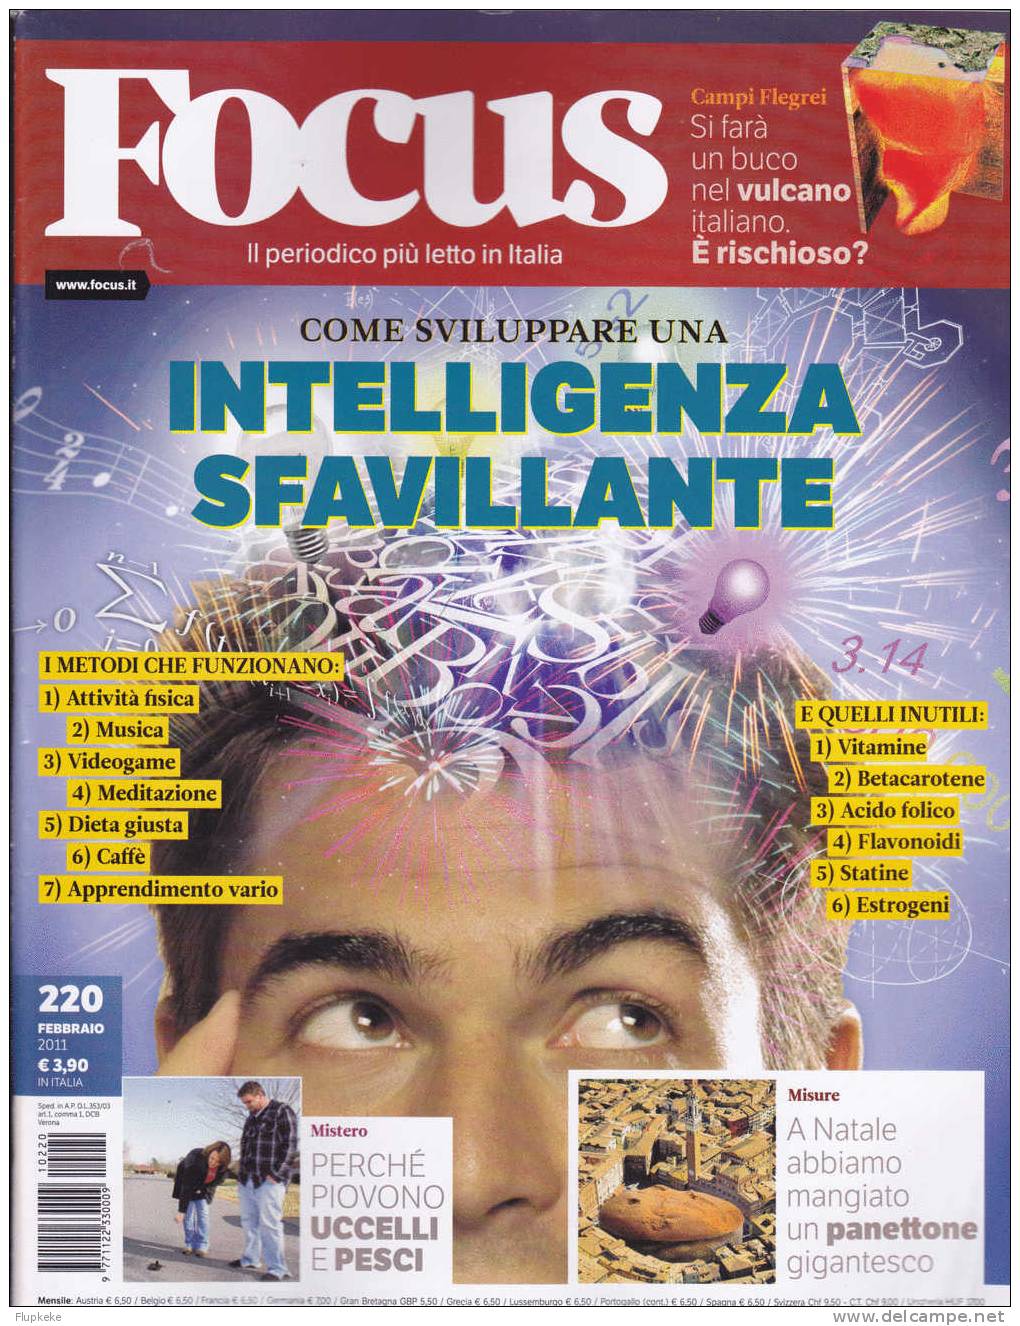 Focus 220 Februaio 2011 Come Sviluppare Una Intelligenza Sfavillante - Textes Scientifiques